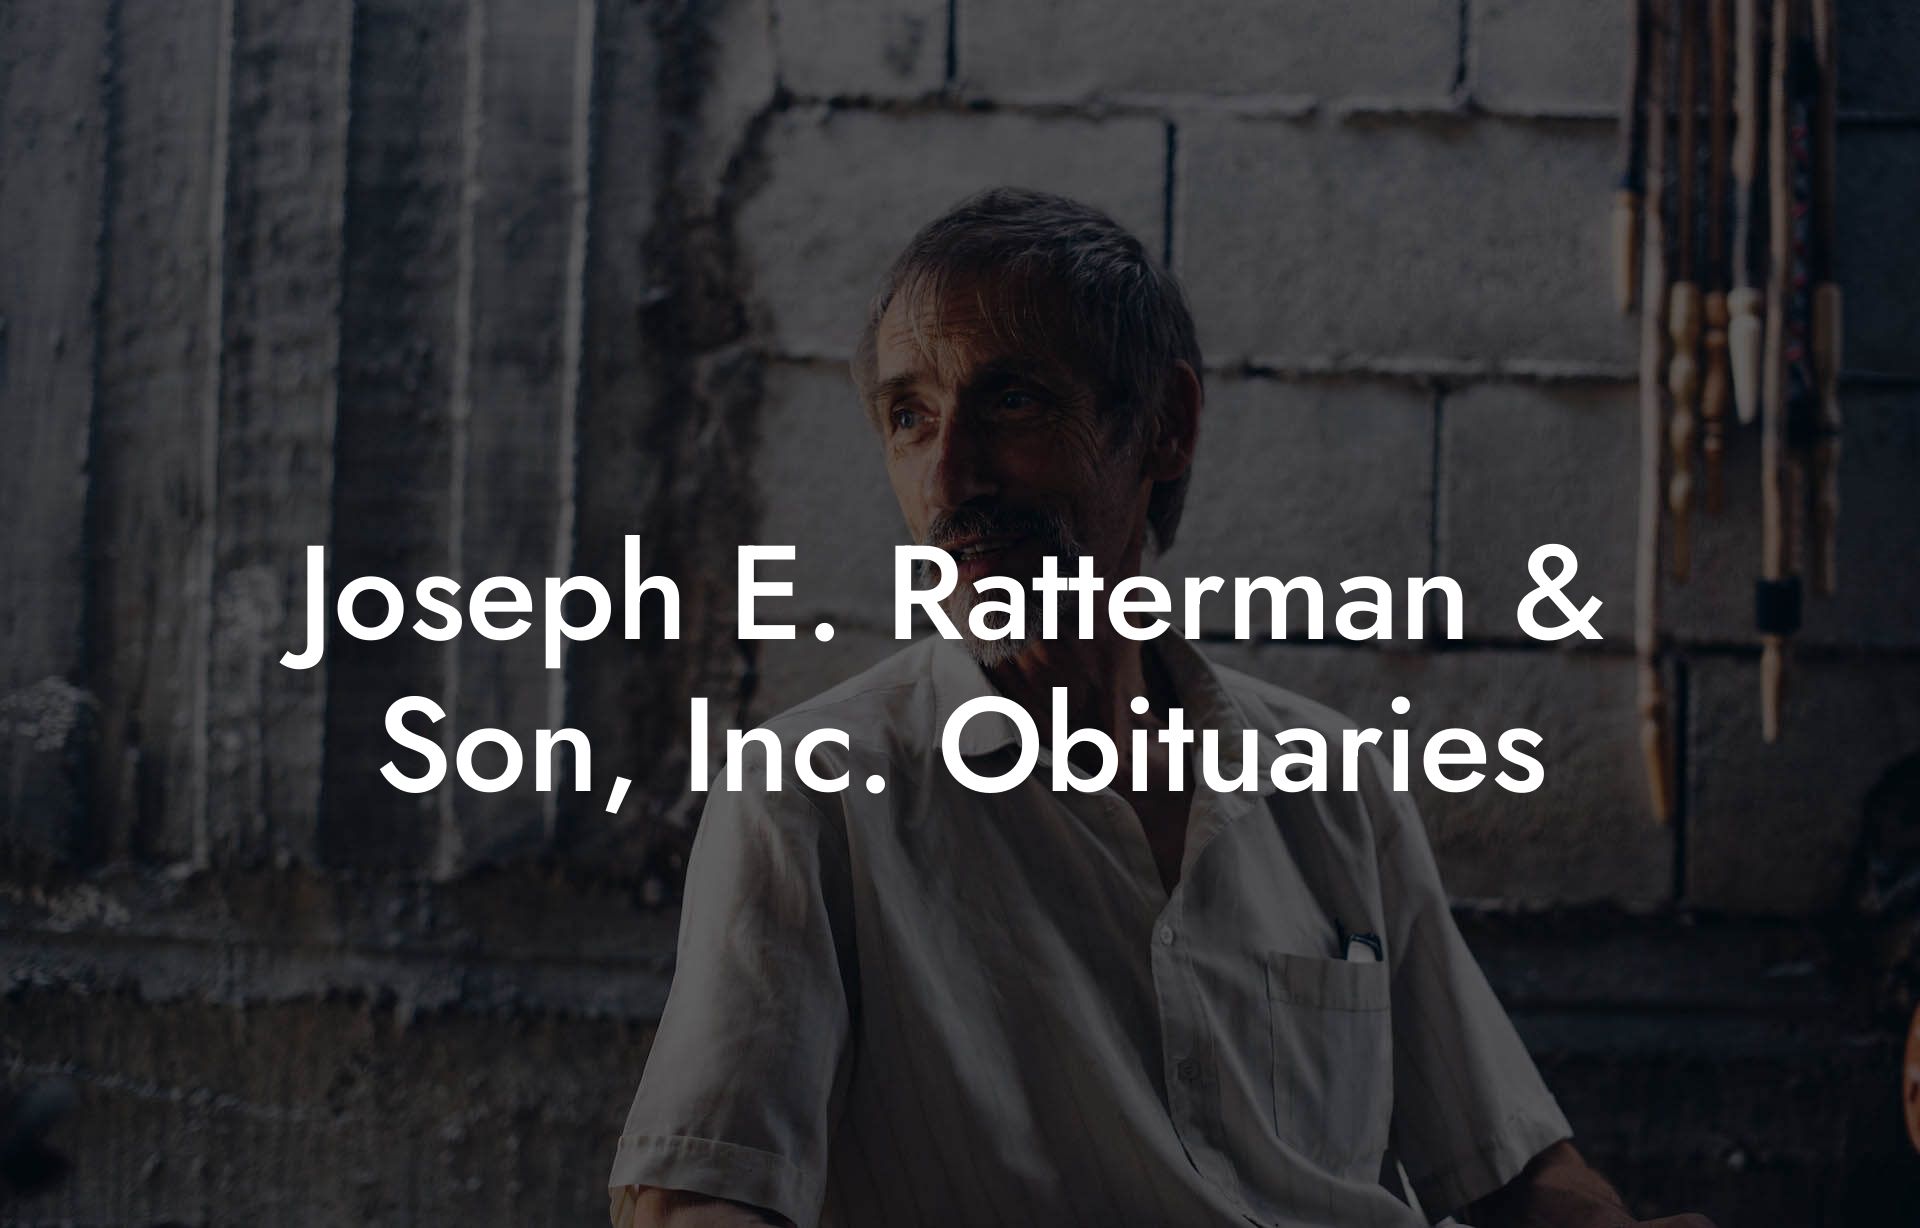 Joseph E. Ratterman & Son, Inc. Obituaries